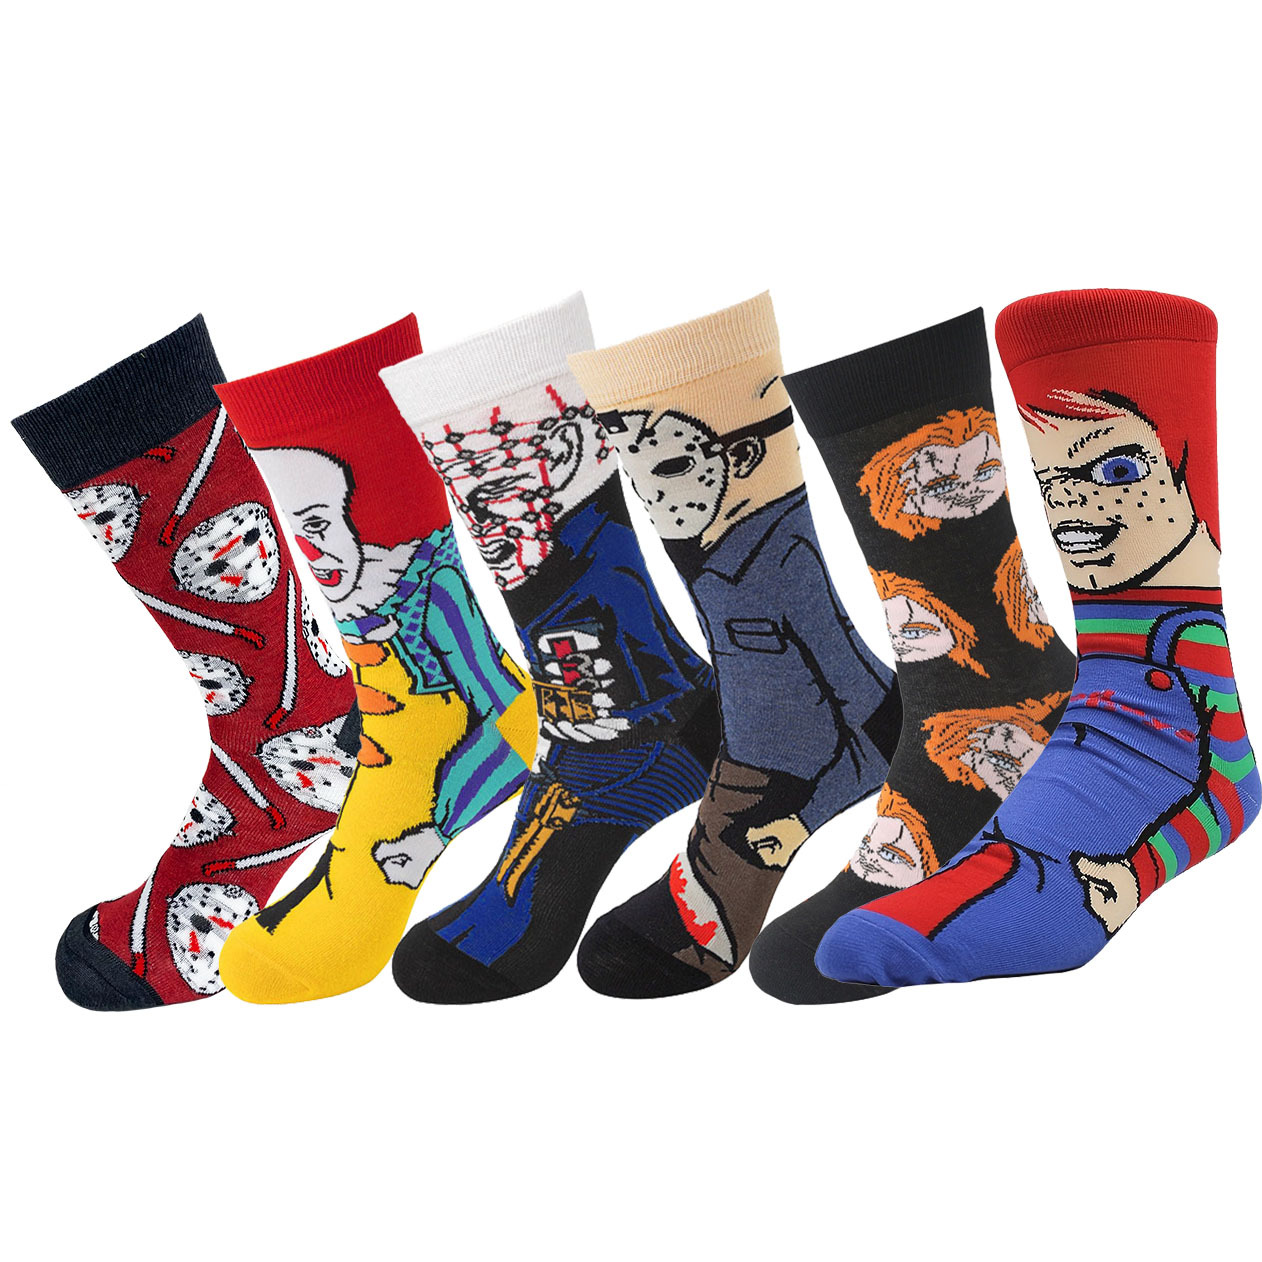 Gremlins - Calcetines para hombre, diseño de dibujos animados y personajes  a rayas, paquete de 2 calcetines para adultos, Varios colores